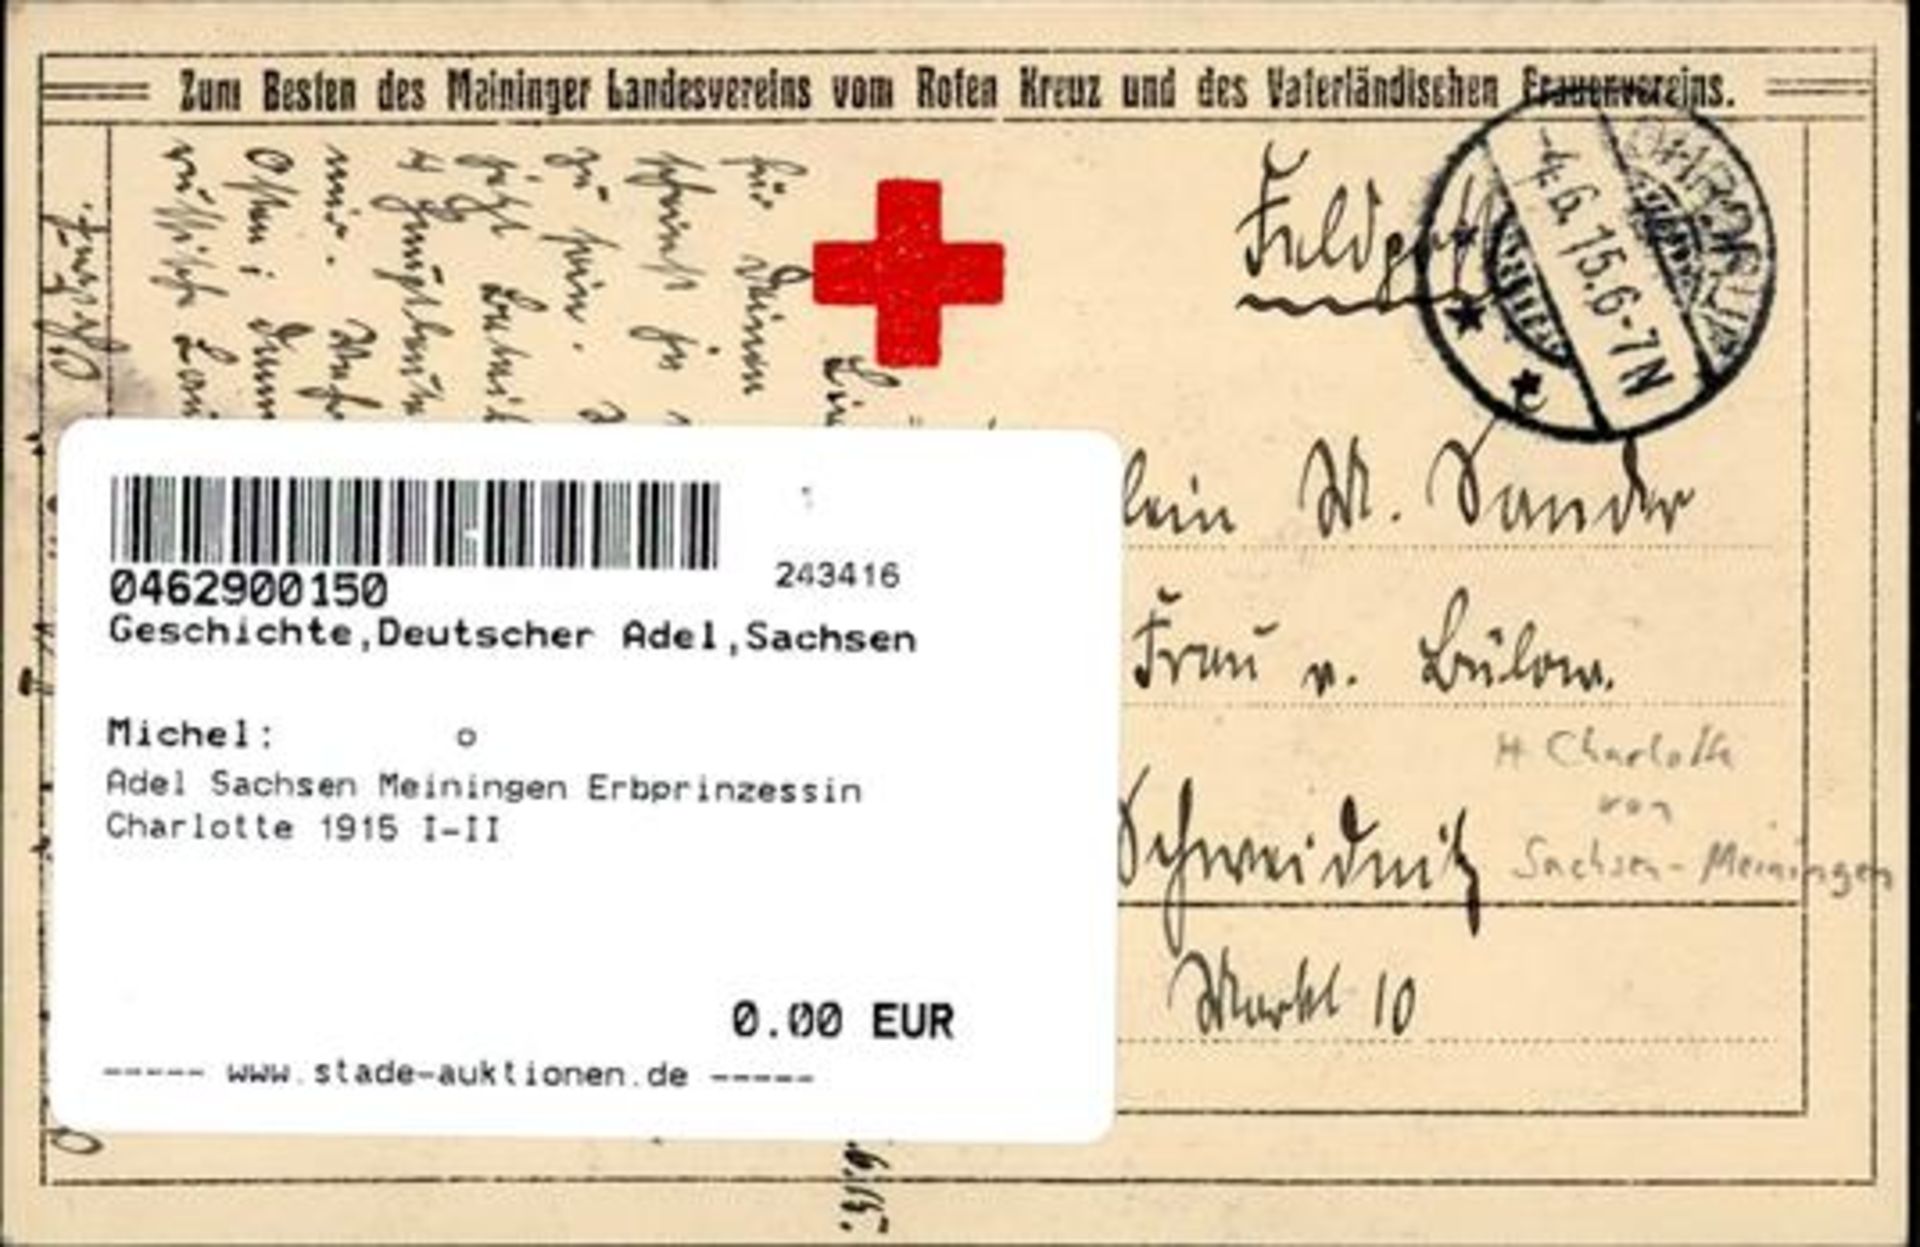 Adel Sachsen Meiningen Erbprinzessin Charlotte 1915 I-II - Bild 2 aus 2